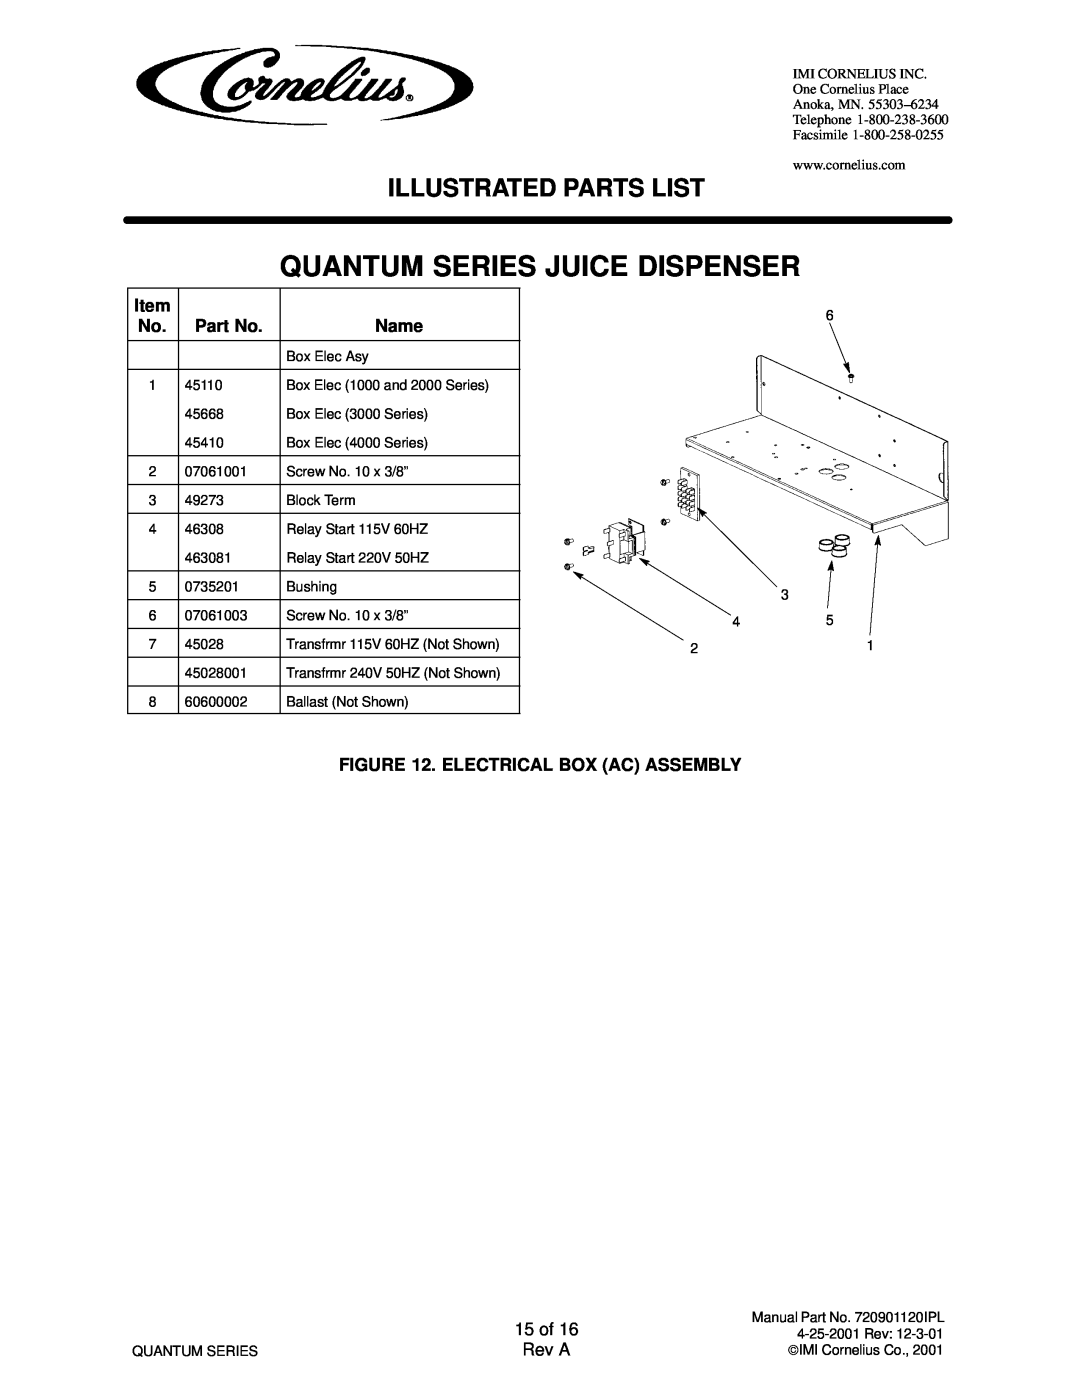 Cornelius QUANTUM SERIES service manual Quantum Series Juice Dispenser, Illustrated Parts List 